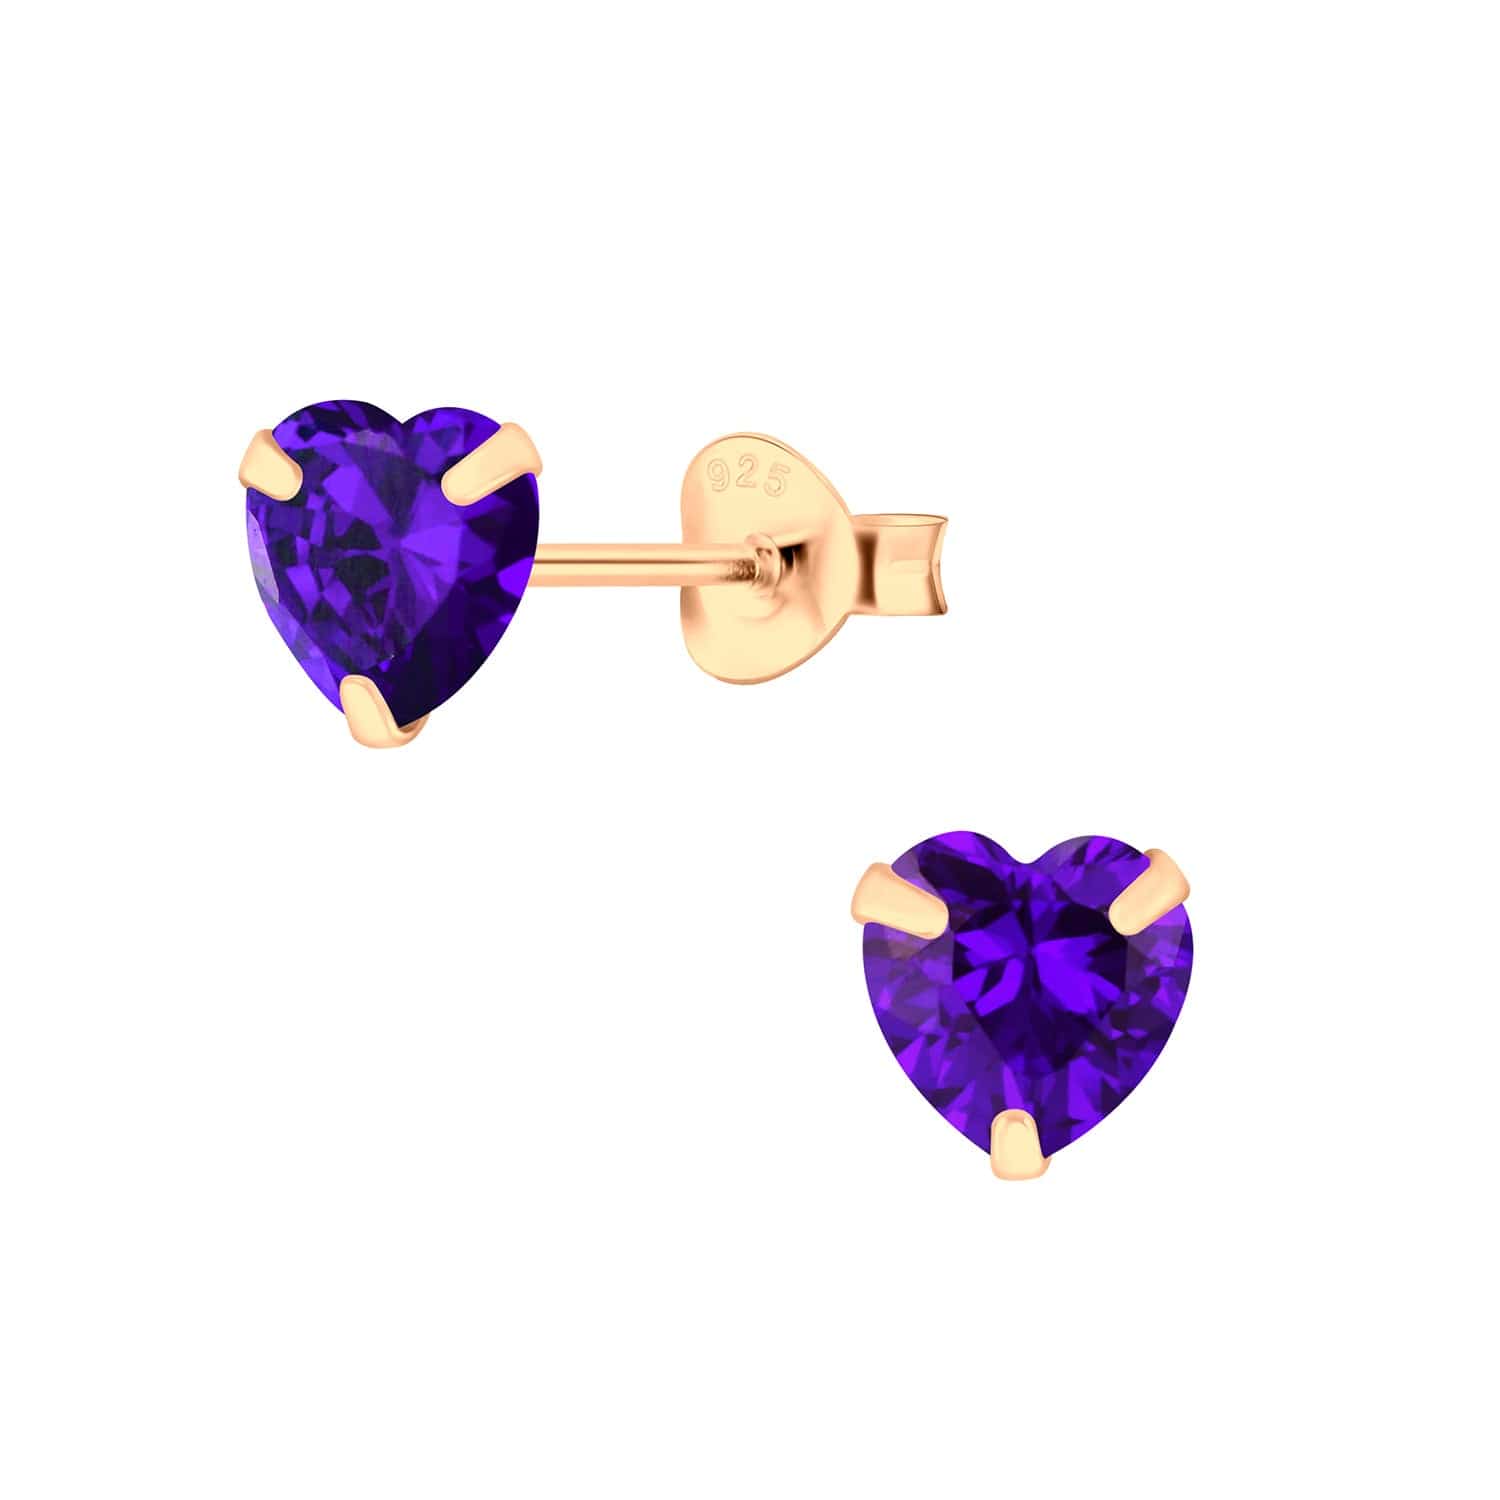 jewelaus Earrings Violet 6mm Heart Silver Stud Earrings